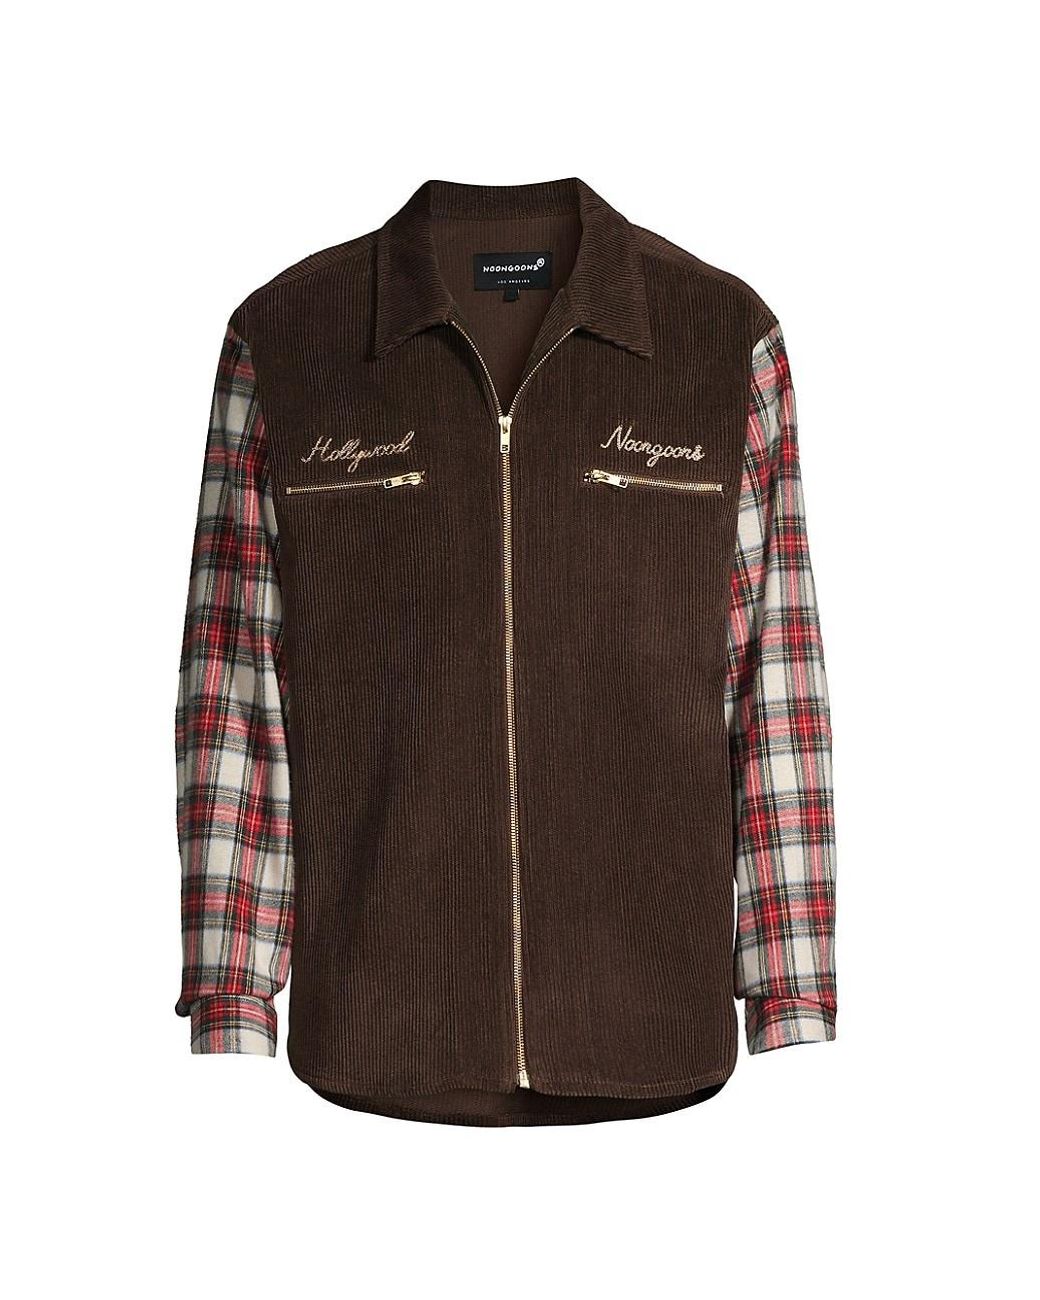 Noon Goons Roy Rogers Zip-up Corduroy Shirt in Brown for Men